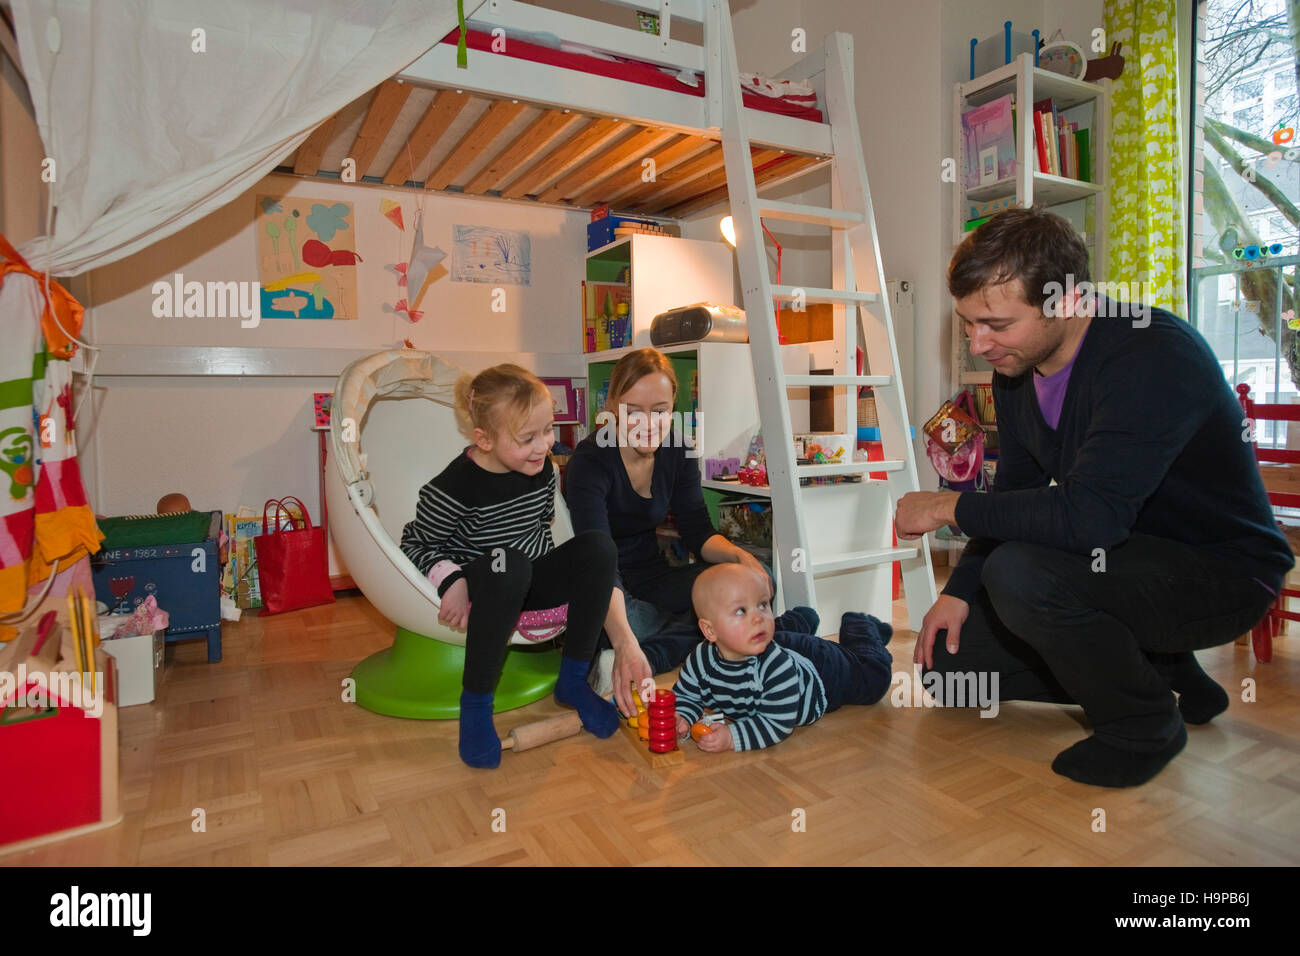 Deutschland, junge Familie mit Kindern in Kinderzimmer Stock Photo